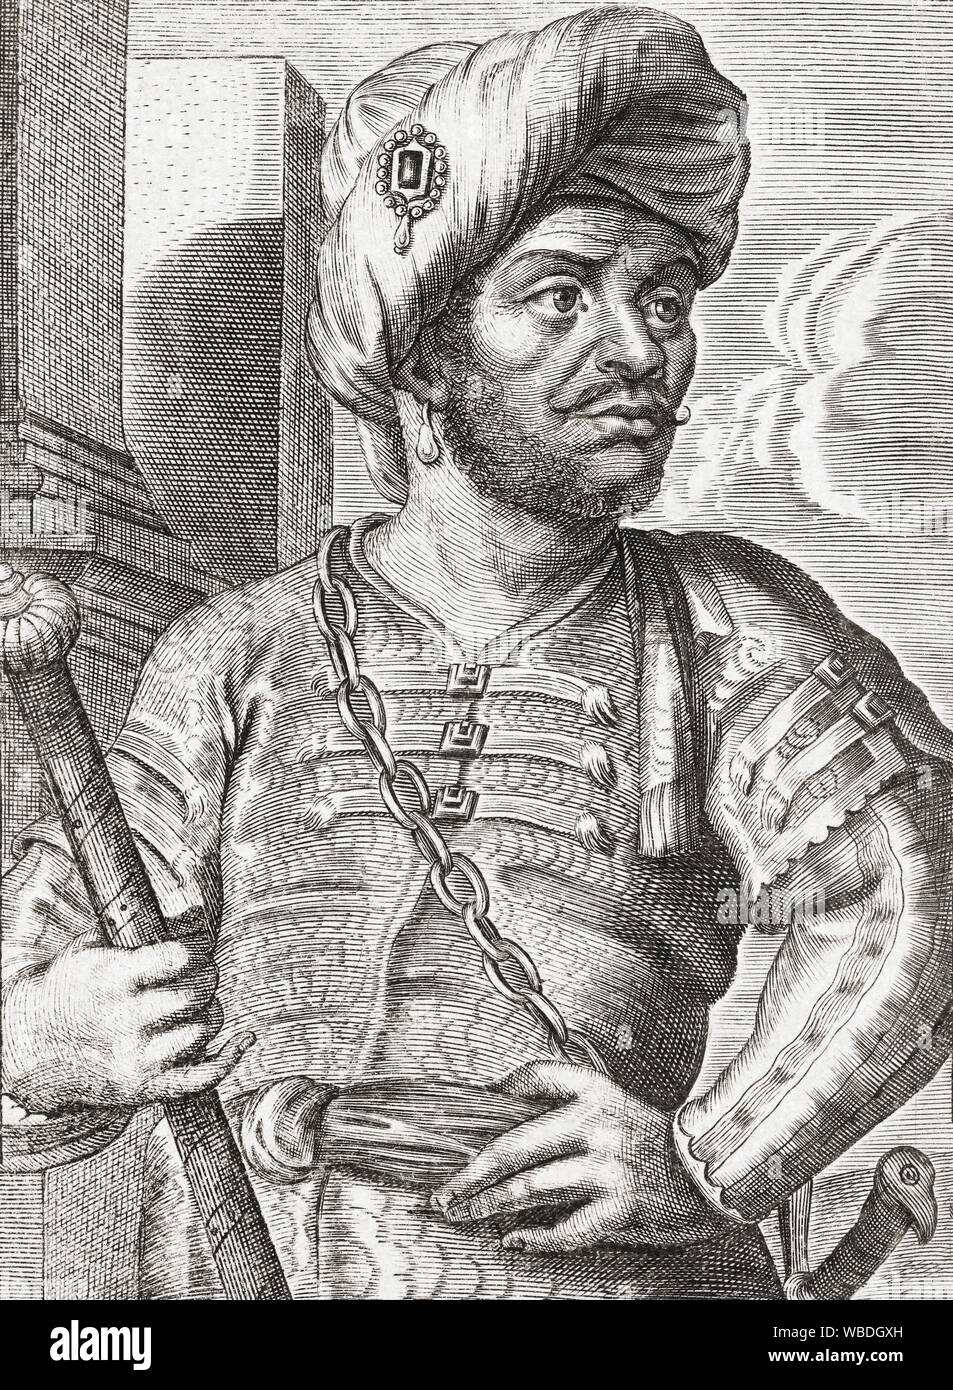 Mulai, Ar-rasheed Ar-rasheed nom complet Ben Ali Al-Charif, 1631-1672. Le sultan du Maroc. Souvent appelé en Angleterre comme Tafilletta. Après un travail du 17ème siècle par Adriaen Lommelin. Banque D'Images